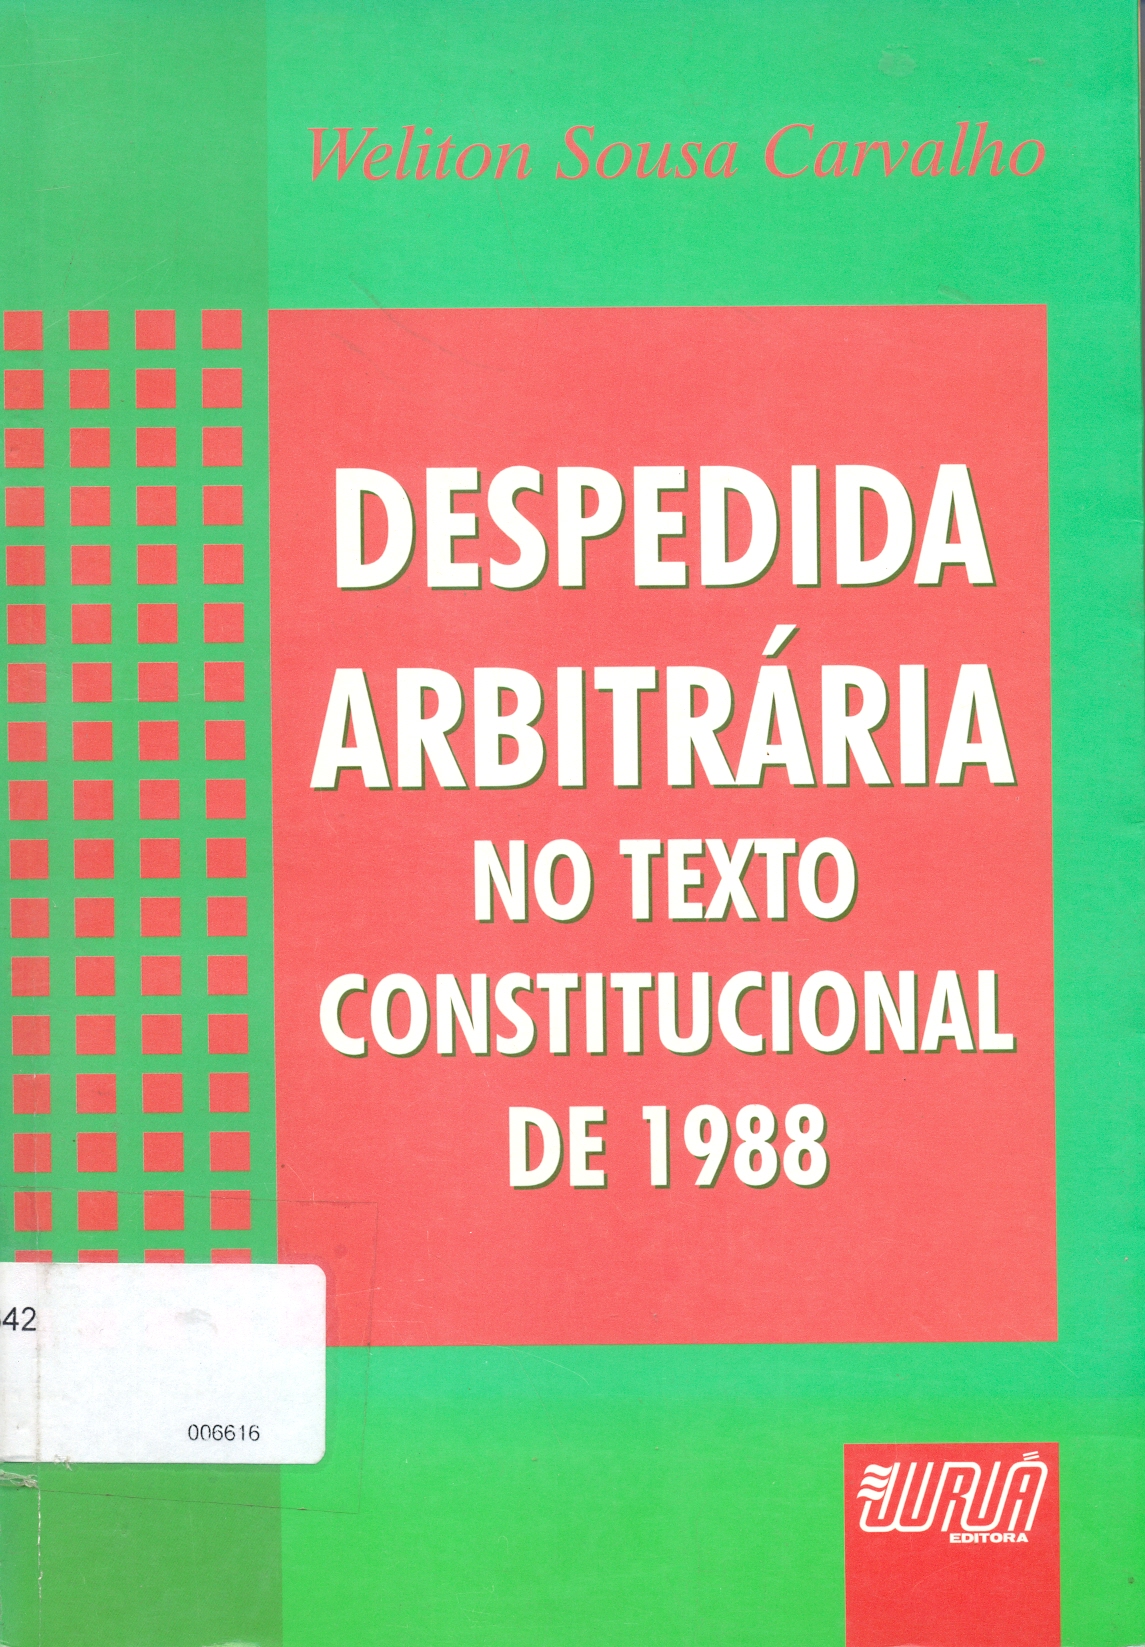 Despedida Arbitrária no texto Constitucional de 1988